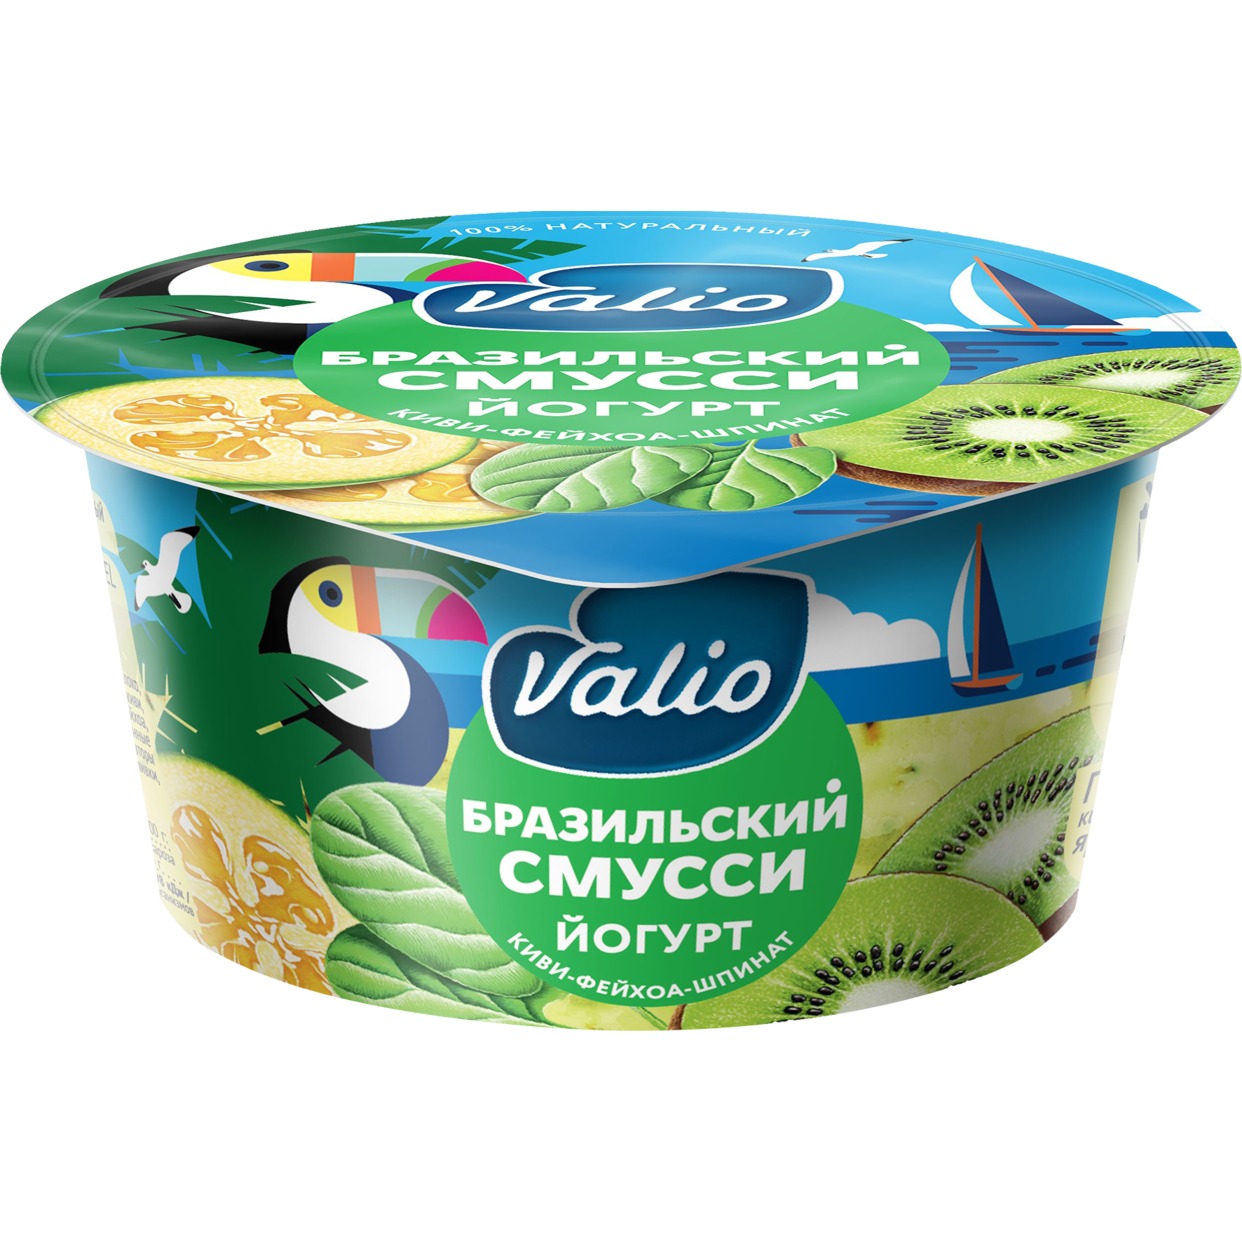 БЗМЖ Йогурт «Valio Clean label бразильский смусси» с киви, фейхоа и шпинатом. мдж 2,6% 140г